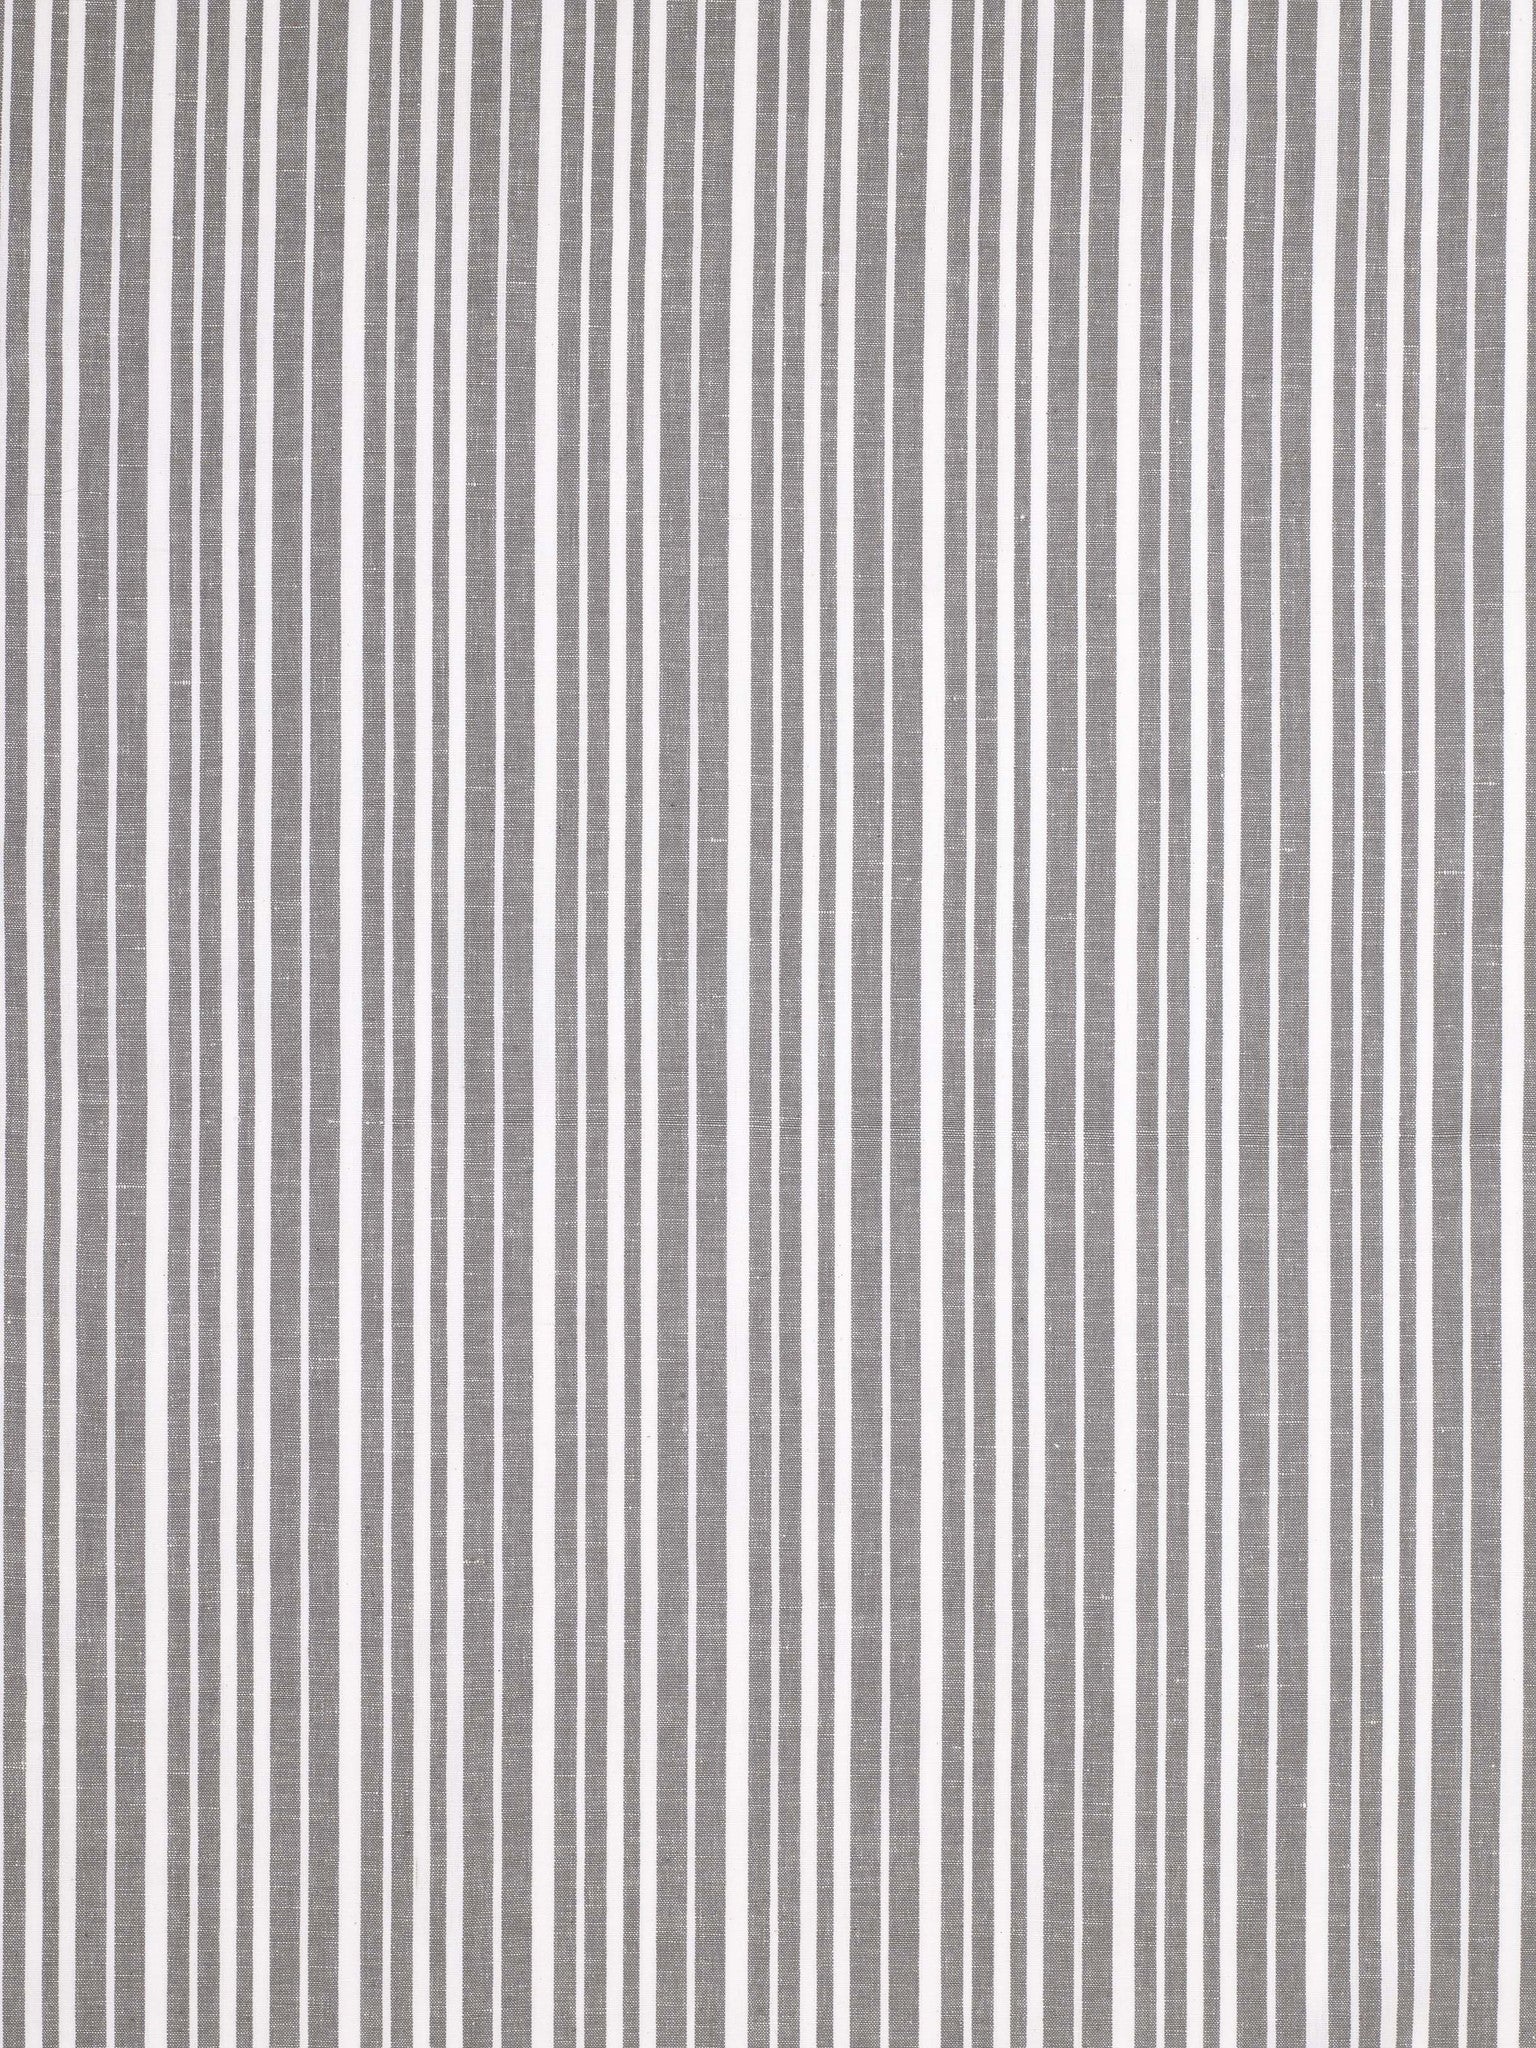 Palermo Stripe Home Decor Fabric - Stone Grey